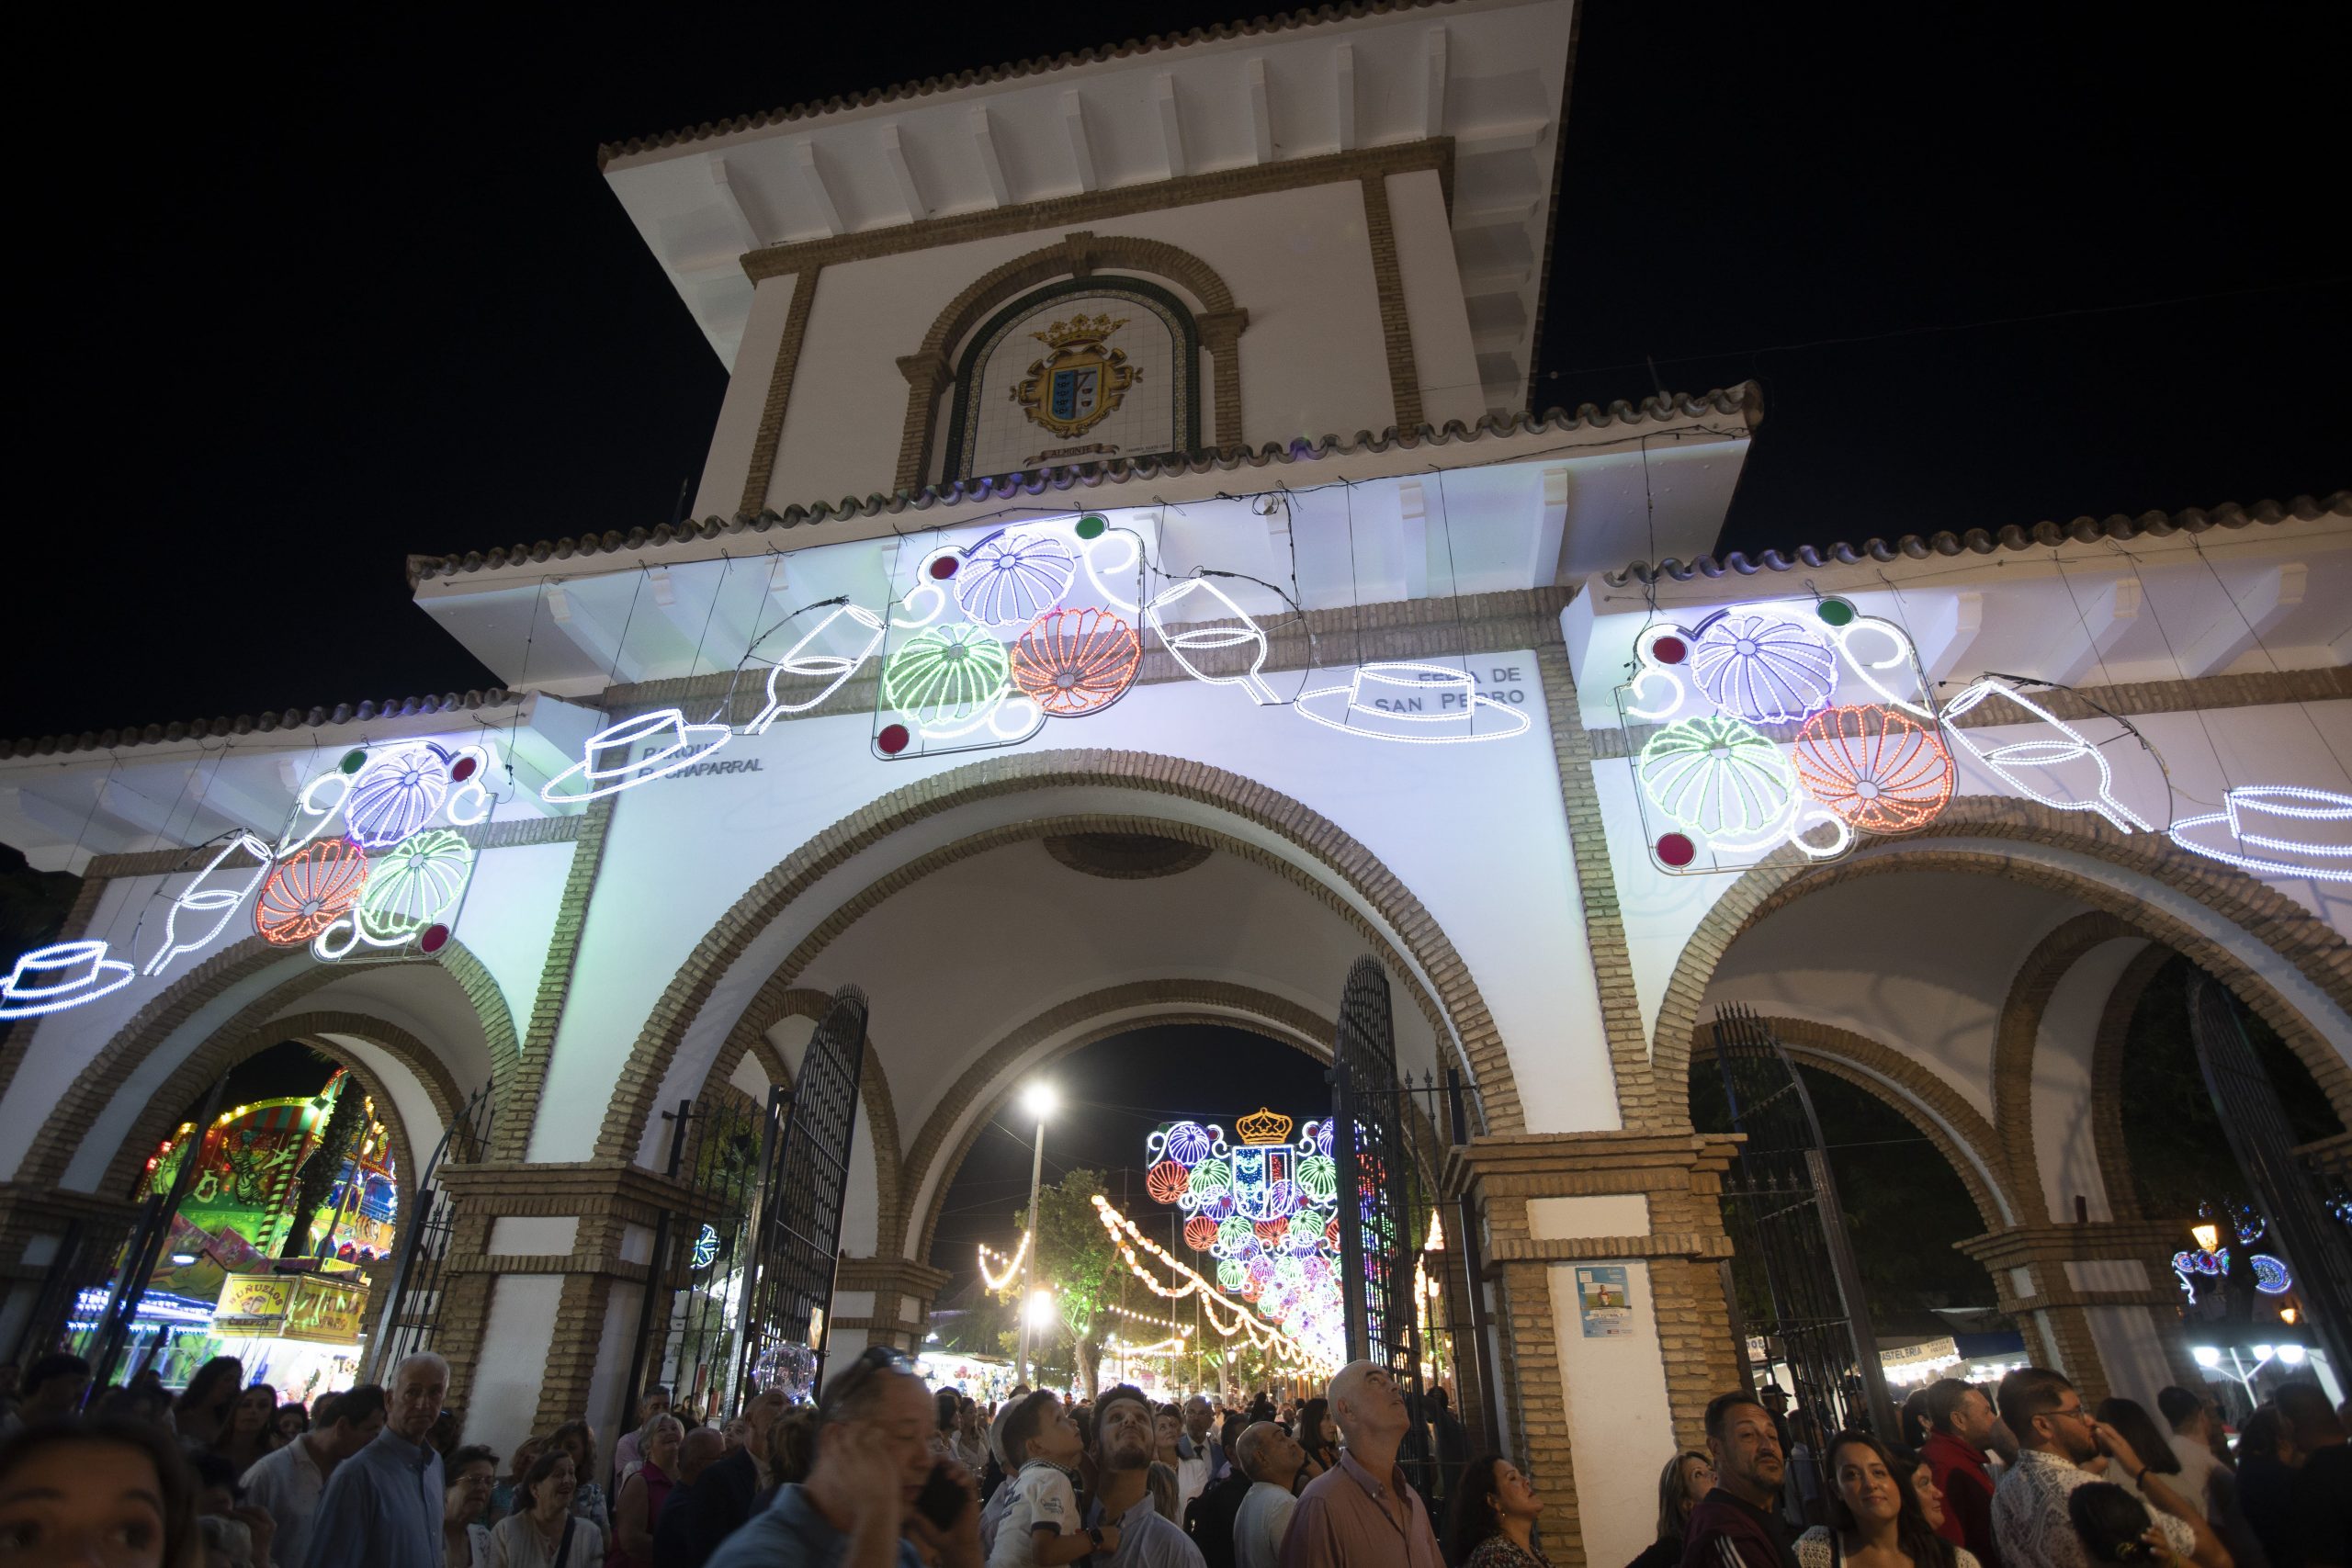 La Feria de San Pedro en Almonte vive sus días centrales desde el Chaparral